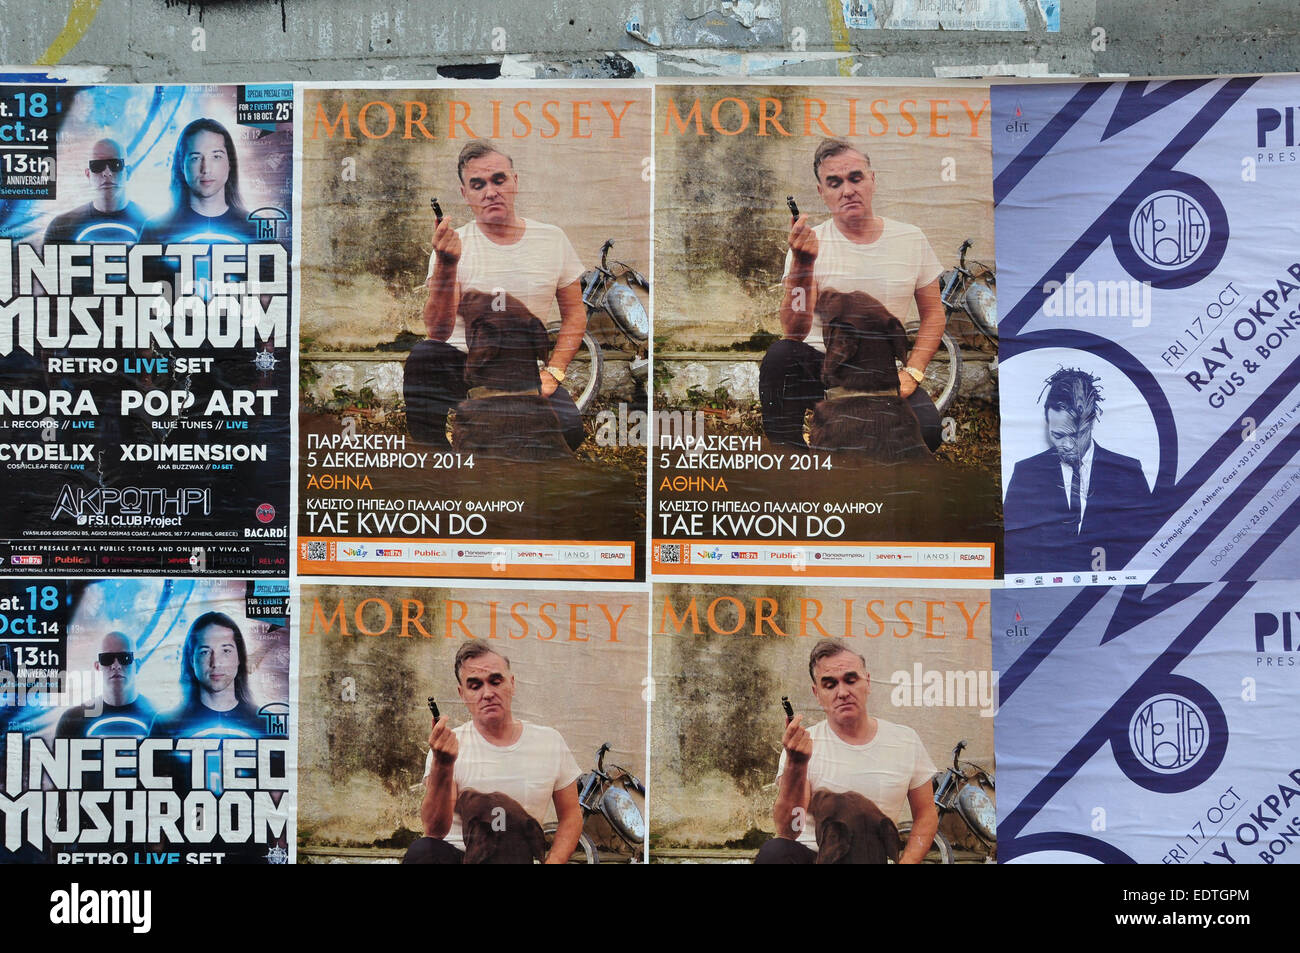 Wand mit live-Musik-Konzert-Poster von Morrissey und dj sets von Ray Okpara und Infected Mushroom. Stockfoto